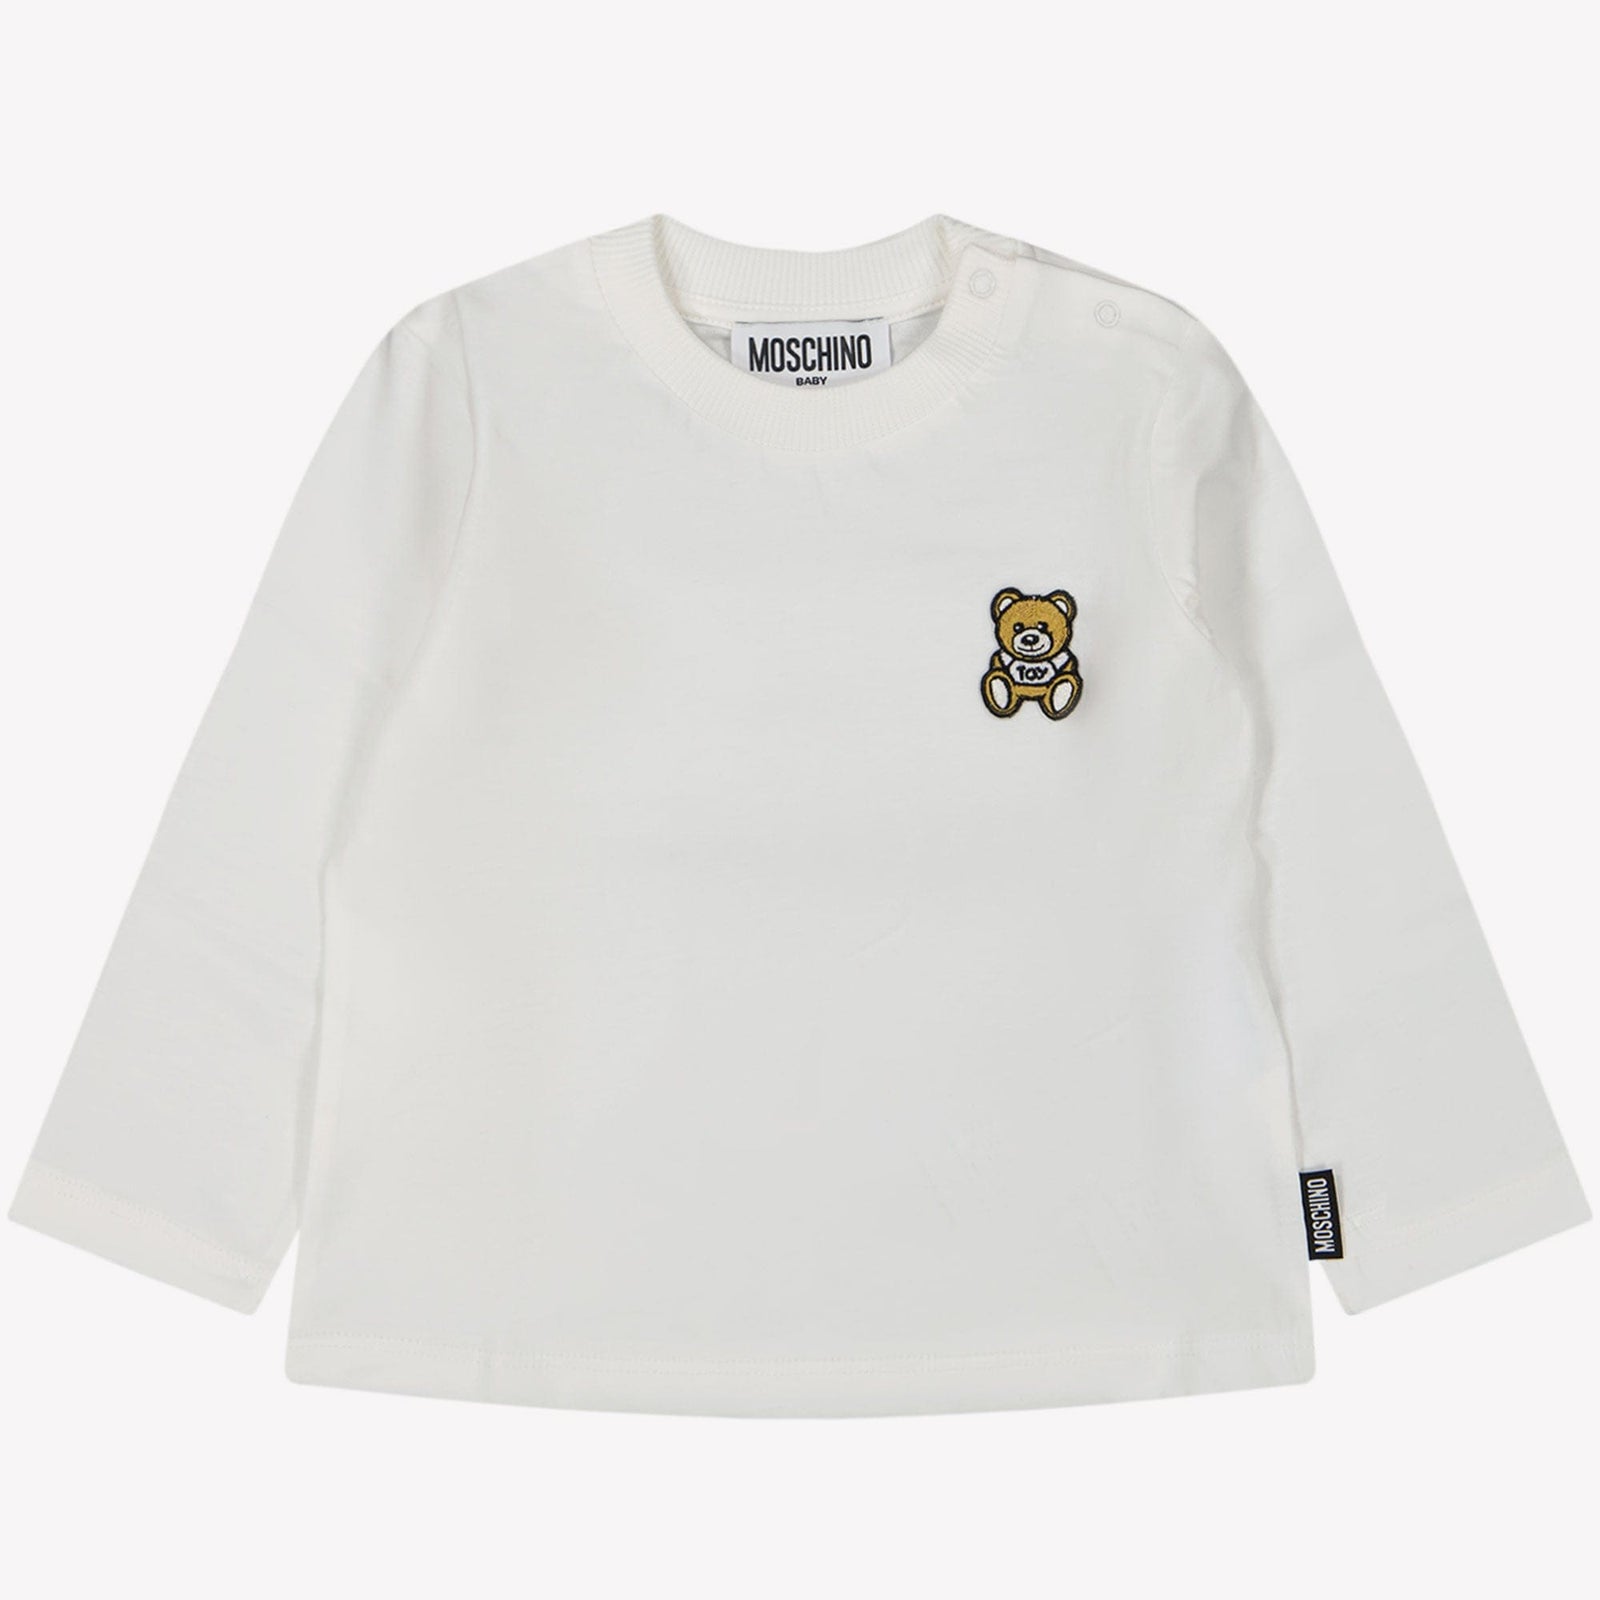 Moschino Baby Jongens T-shirt Off White 3/6